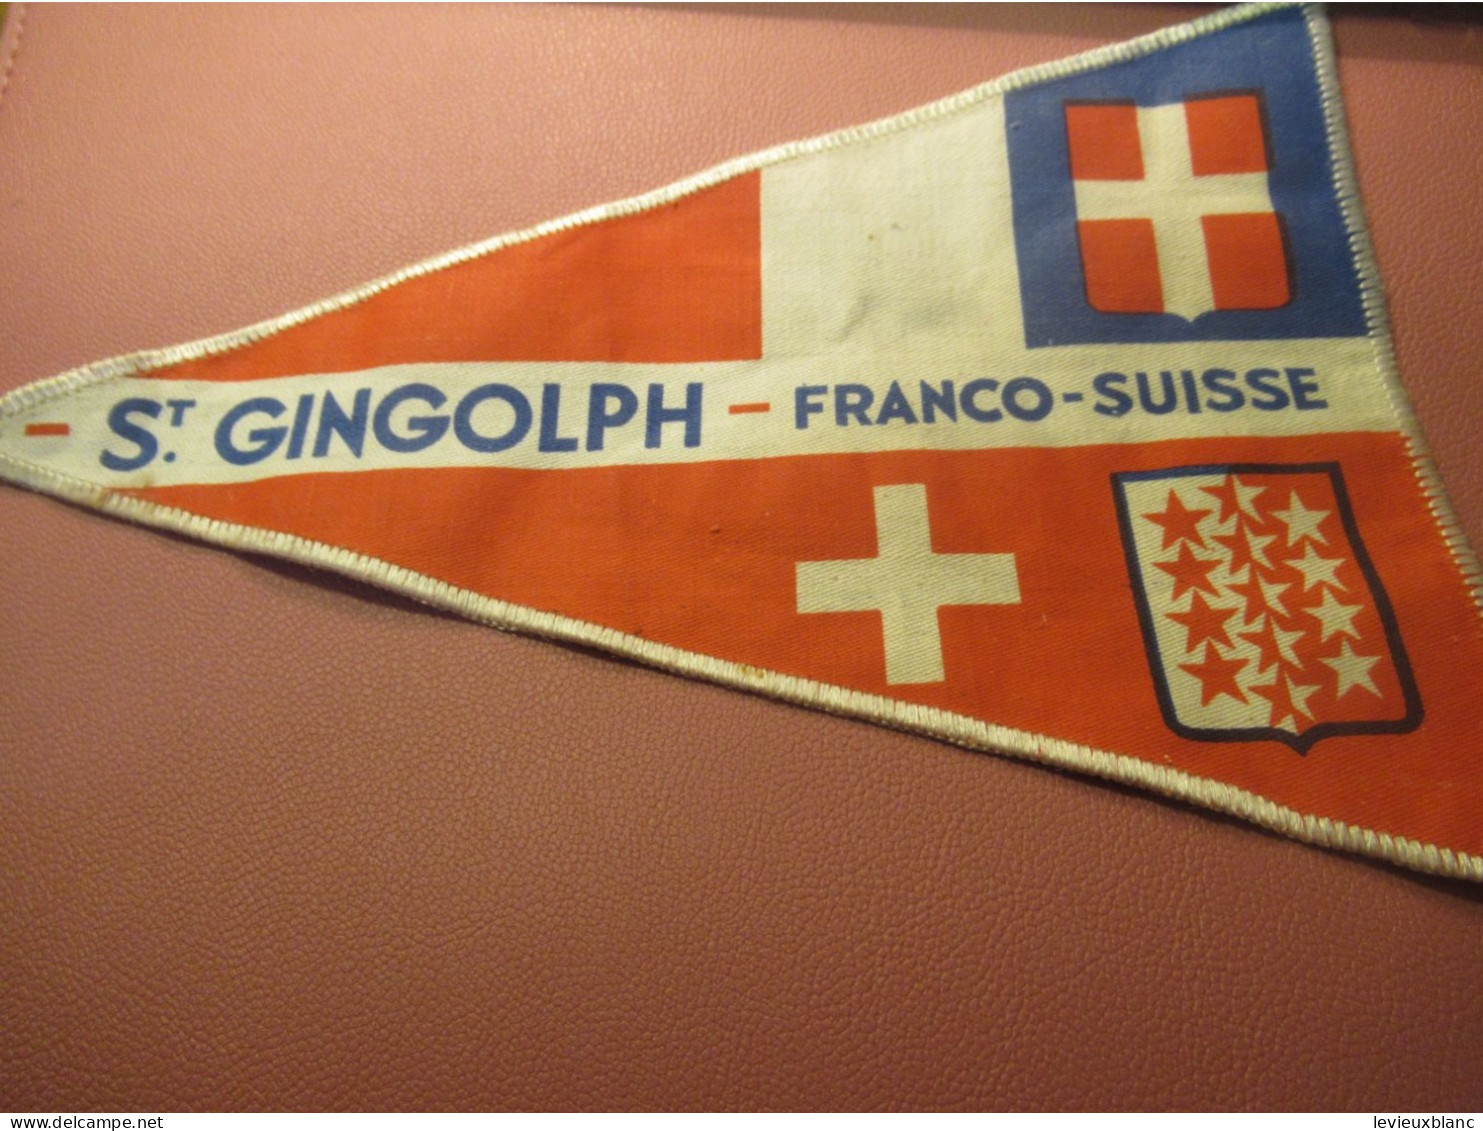 Fanion Touristique Ancien / St GINGOLPH - Franco-Suisse /Vers 1950                 DFA69 - Drapeaux